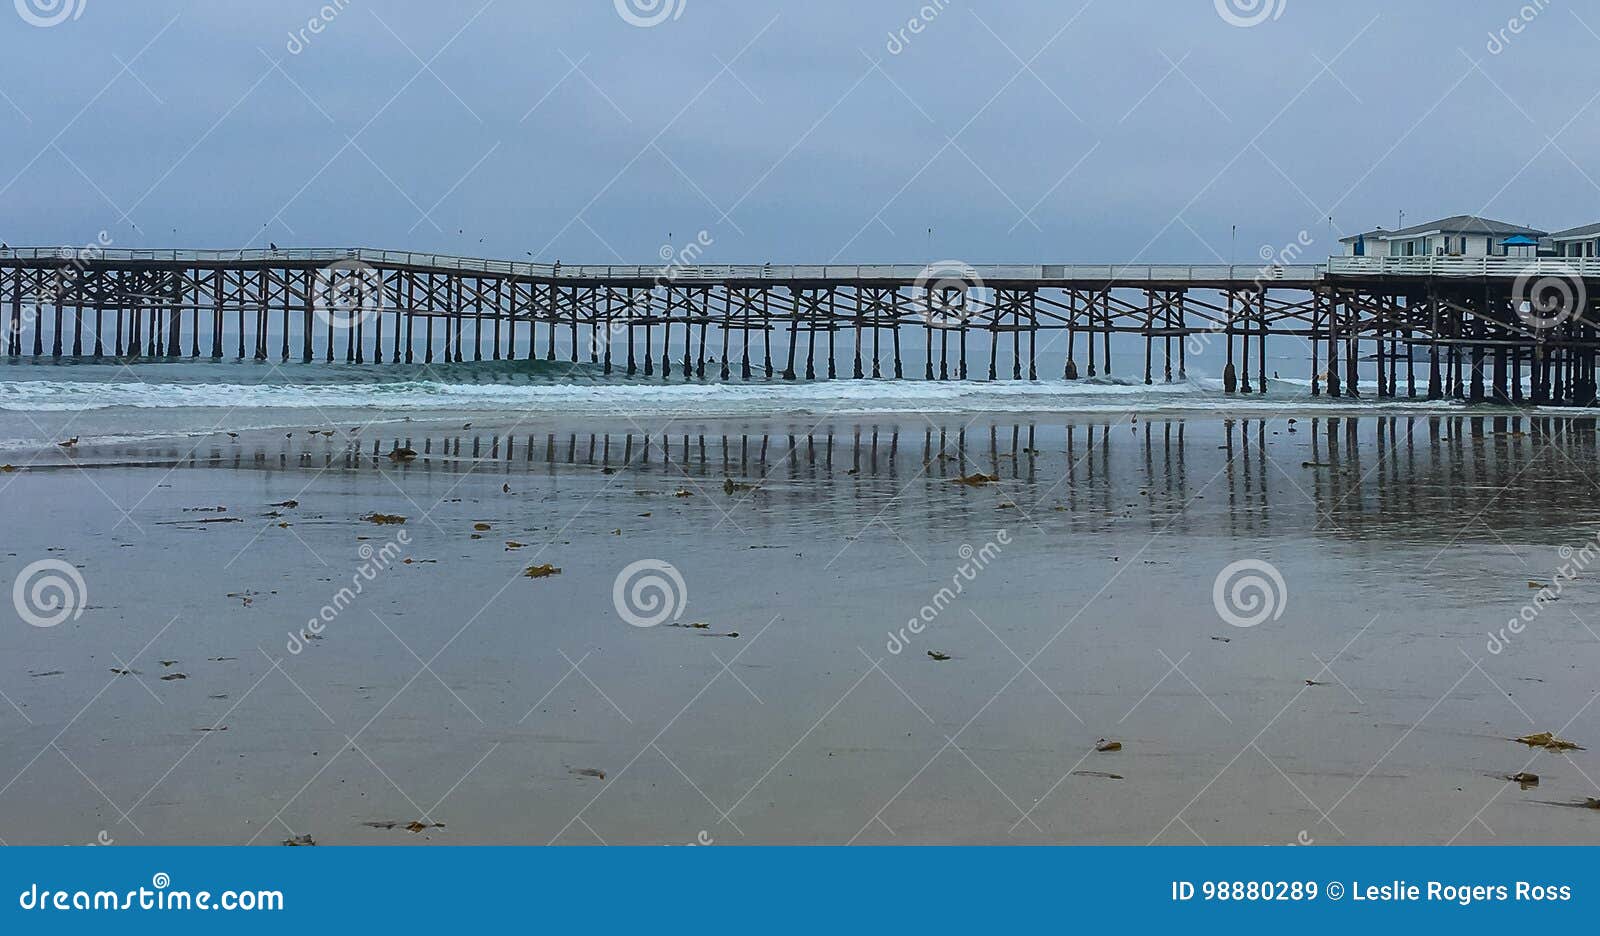 Wzory przy plażą. Krajobrazu strzał plaża, ocean, fala i molo, budował out ocean z wiele wielostrzałowymi geometrycznymi wzorami znajdującymi w ten starym, ręcznie robiony połowu molu w San Diego, Kalifornia